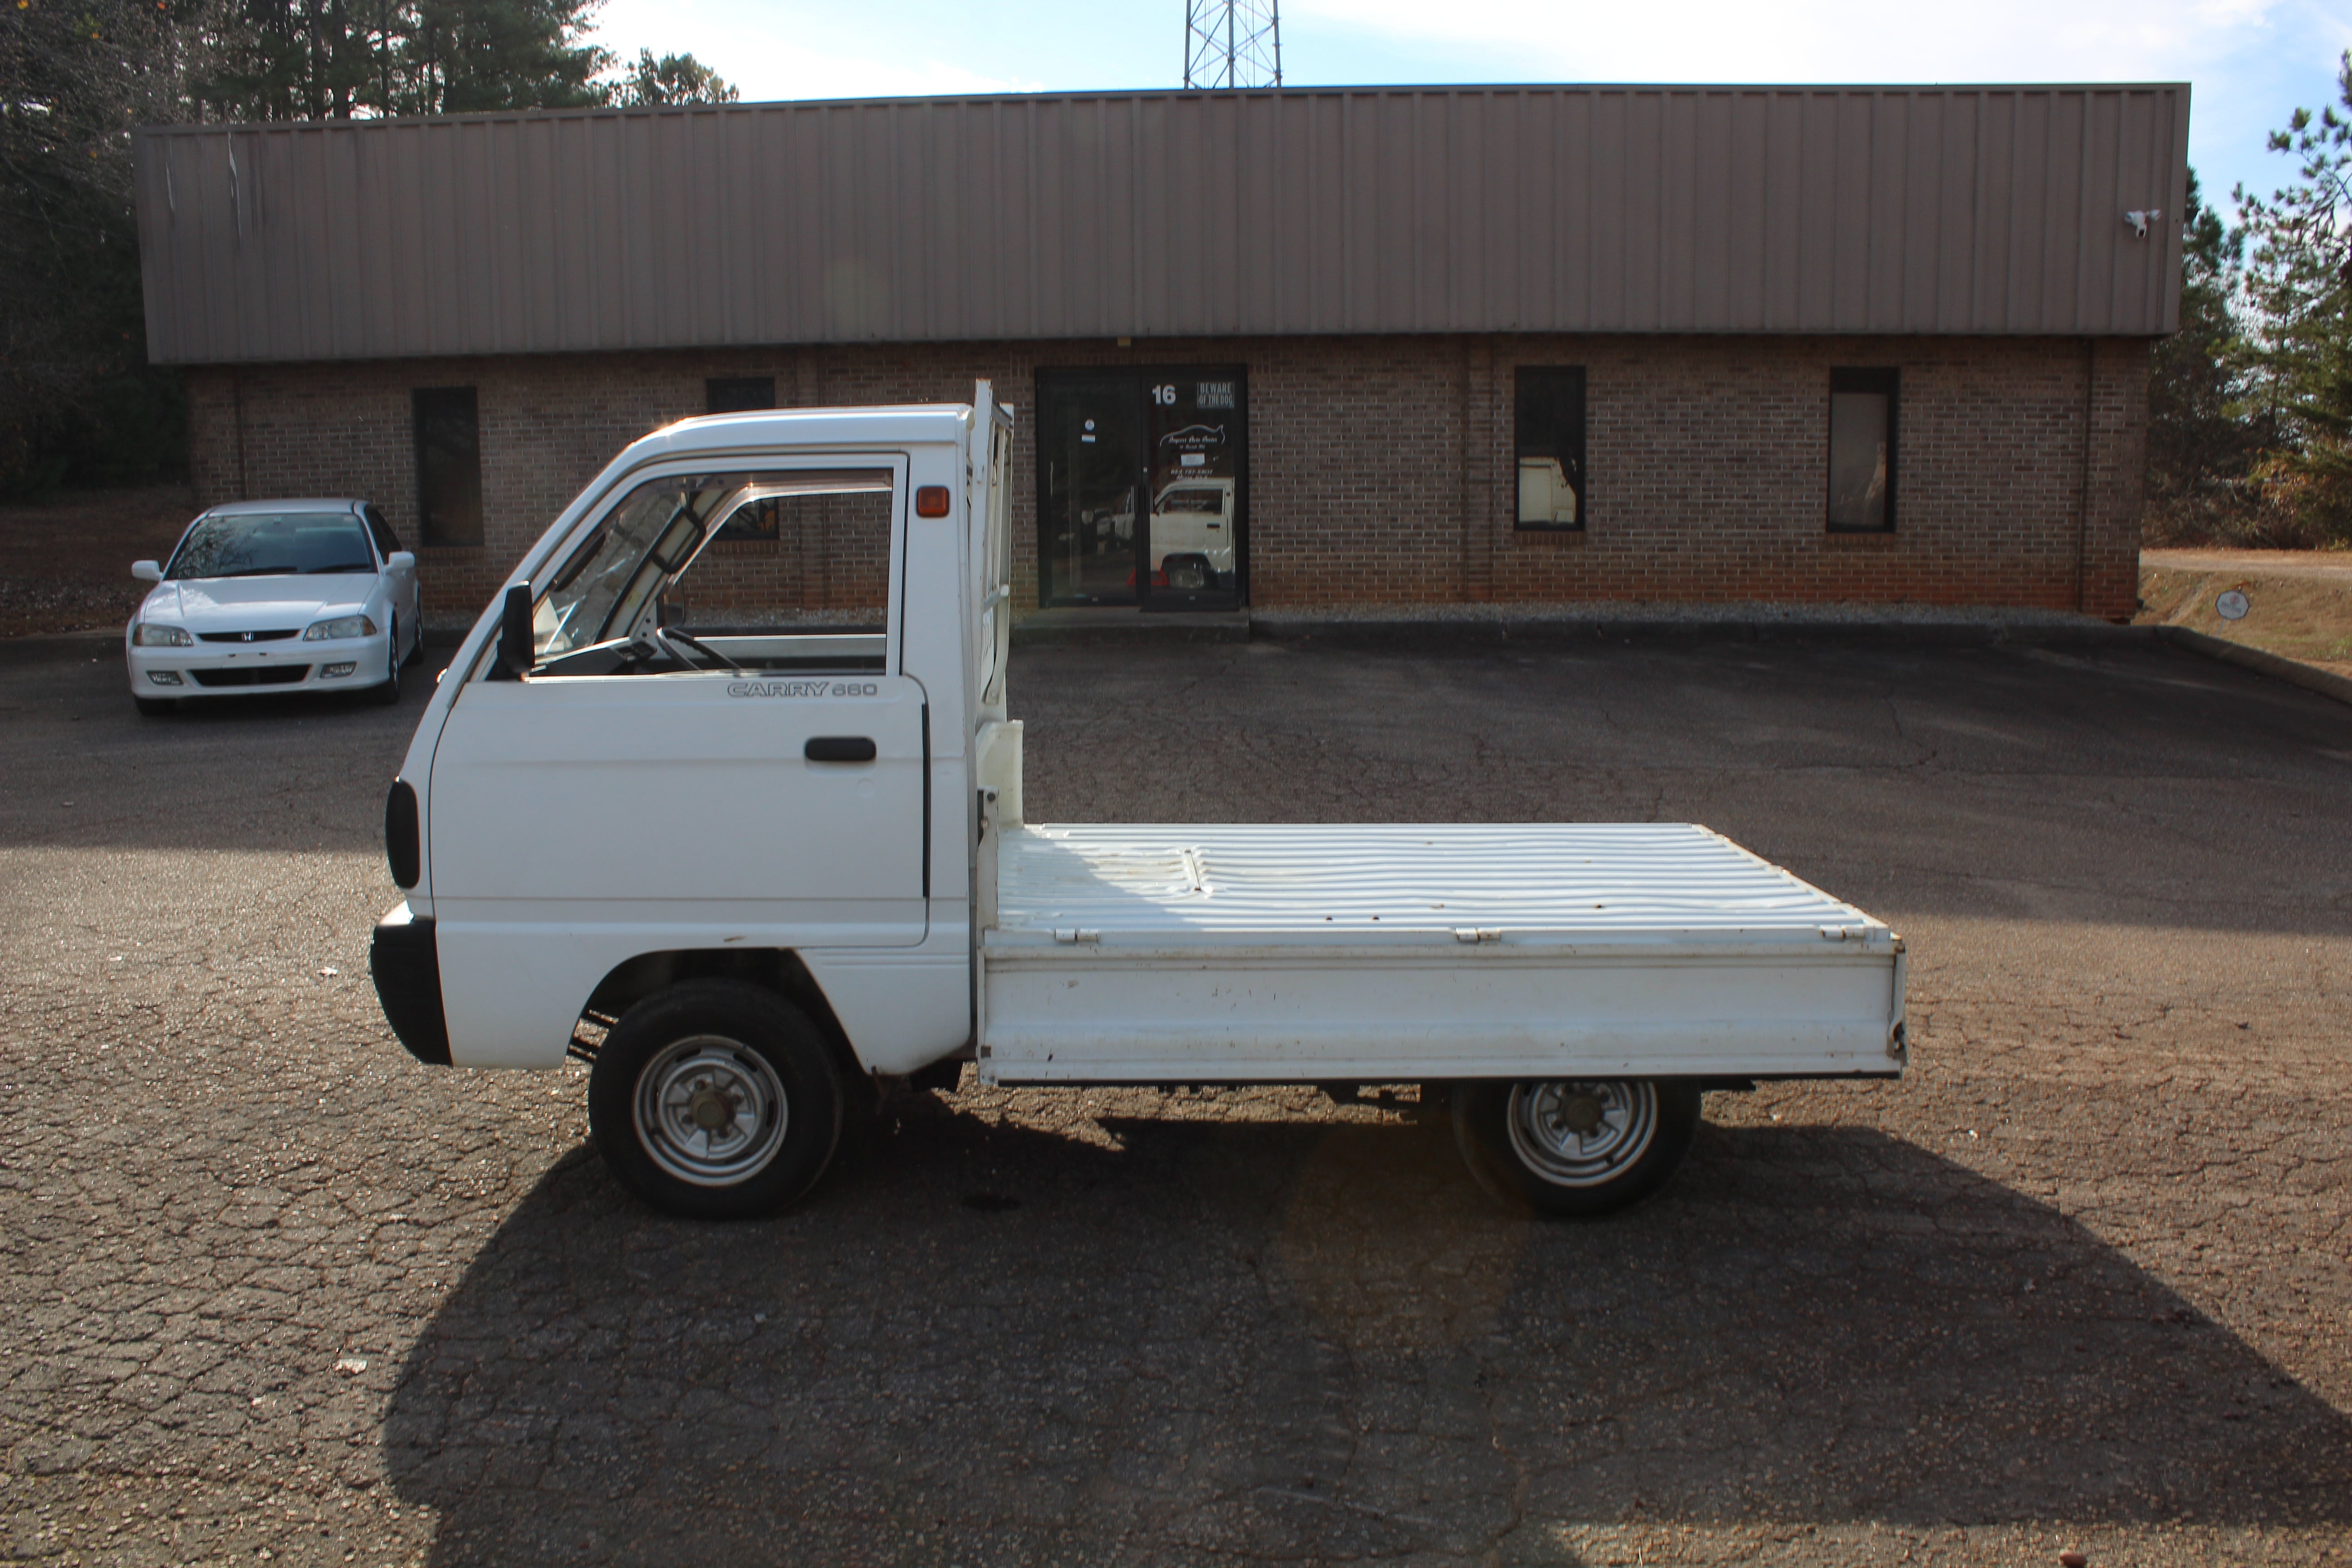 JDM 90 Suzuki Carry Mini Truck Diff/Axle Lock 4LO/4HI Manual Sold